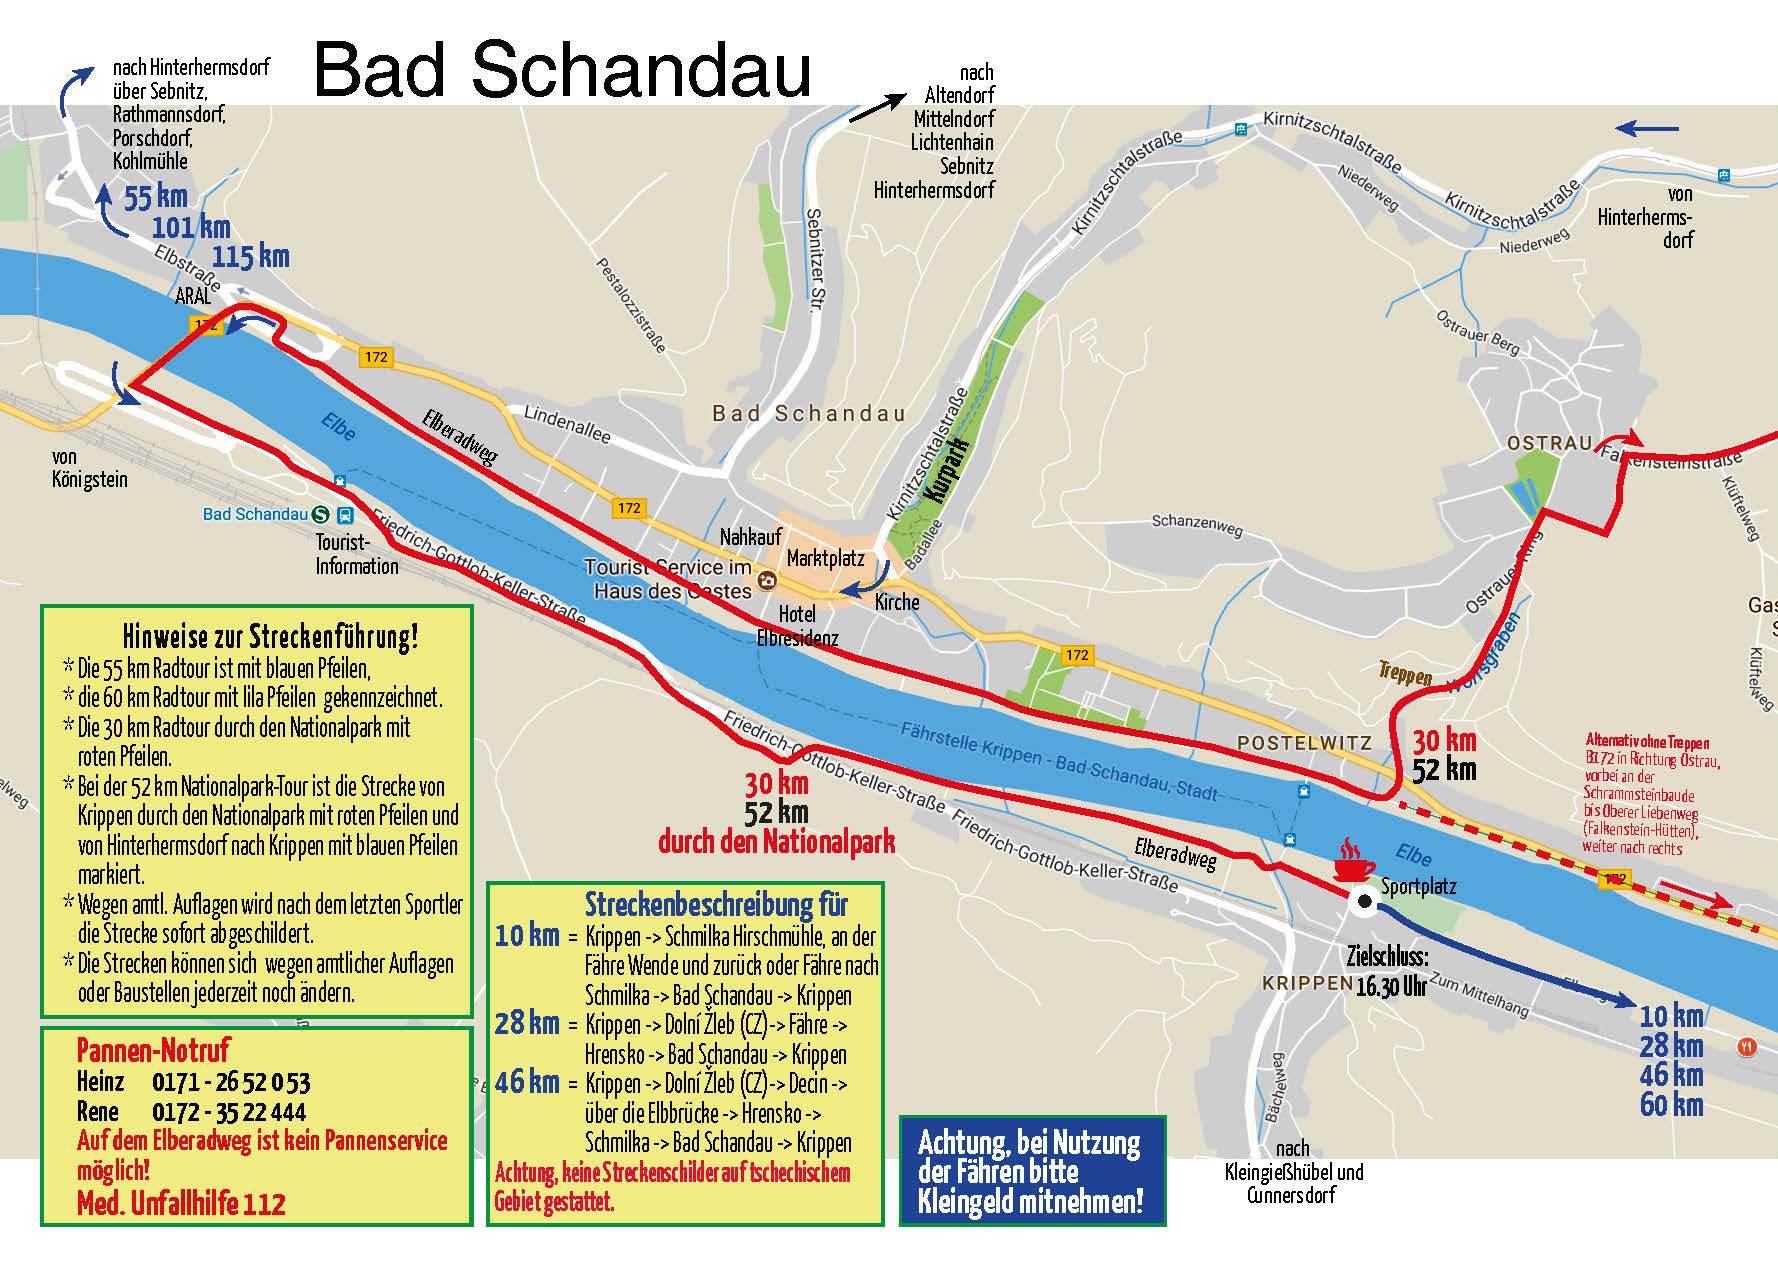 Streckenverläufe in Bad Schandau